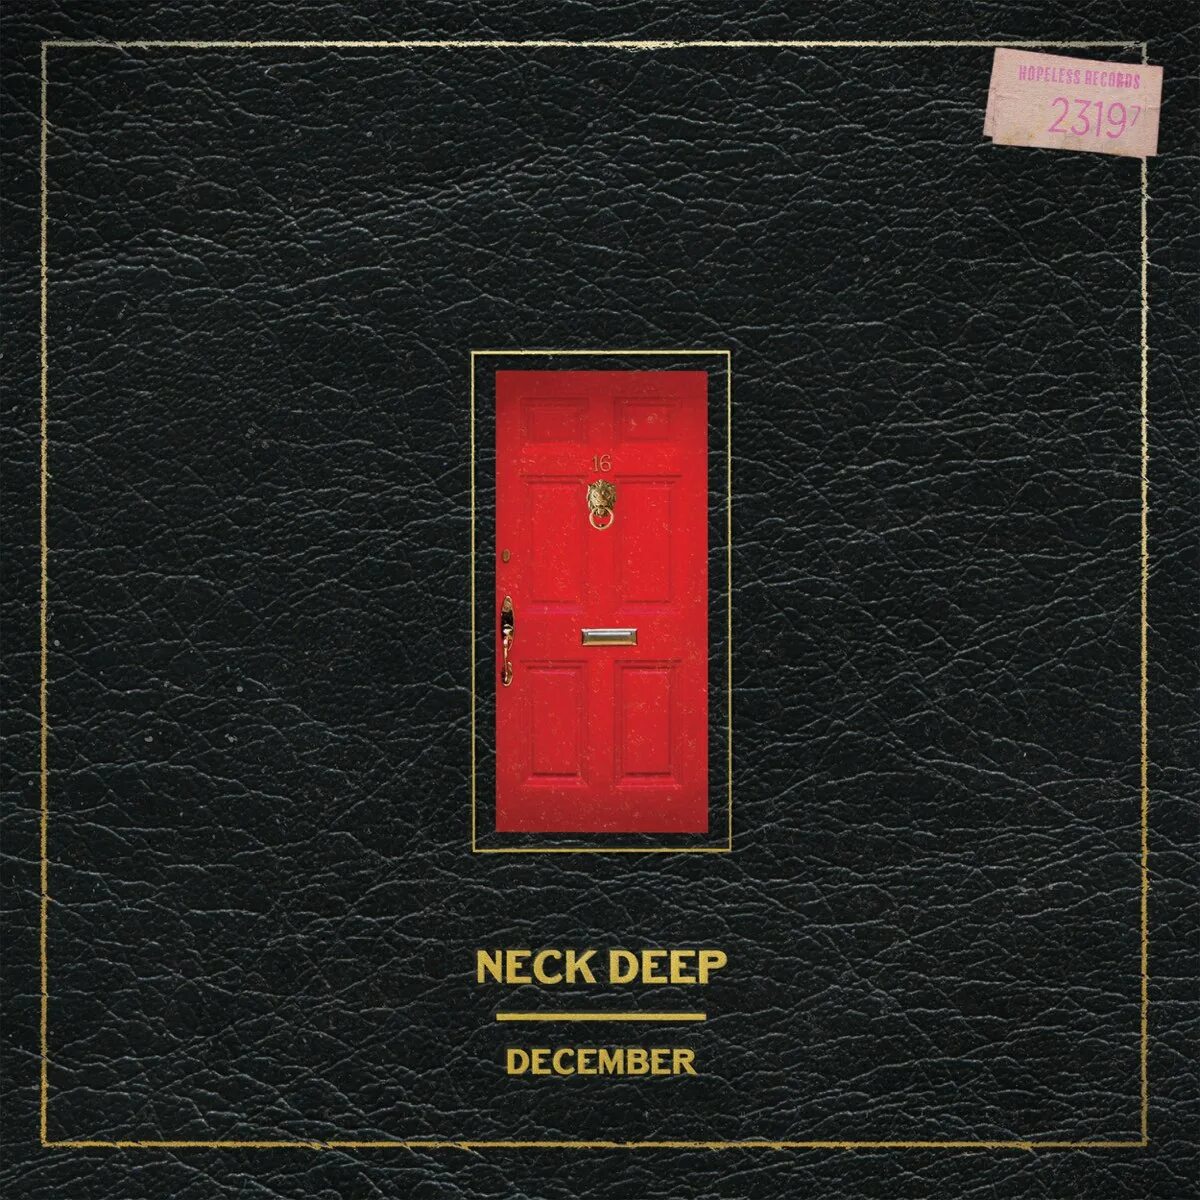 Deep mark. Альбом Neck Deep. Neck Deep December. Neck Deep - December (again) [ft. Mark Hoppus]. Lowlife Neck Deep.